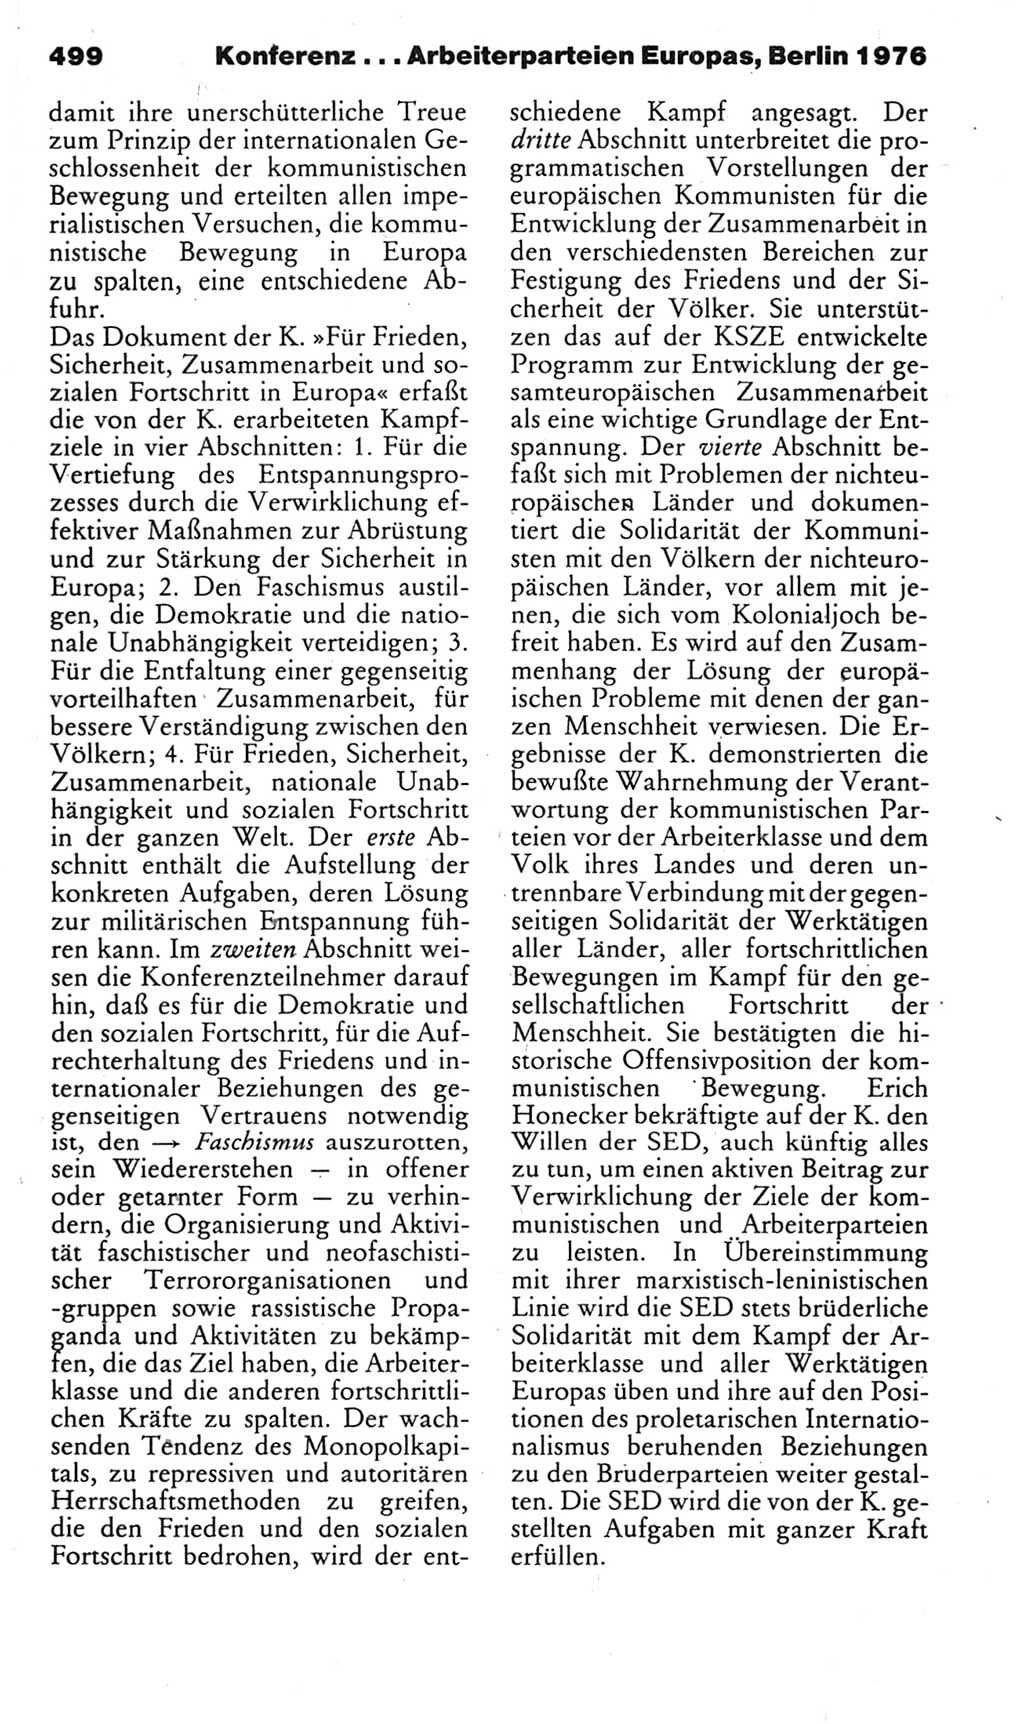 Kleines politisches Wörterbuch [Deutsche Demokratische Republik (DDR)] 1985, Seite 499 (Kl. pol. Wb. DDR 1985, S. 499)